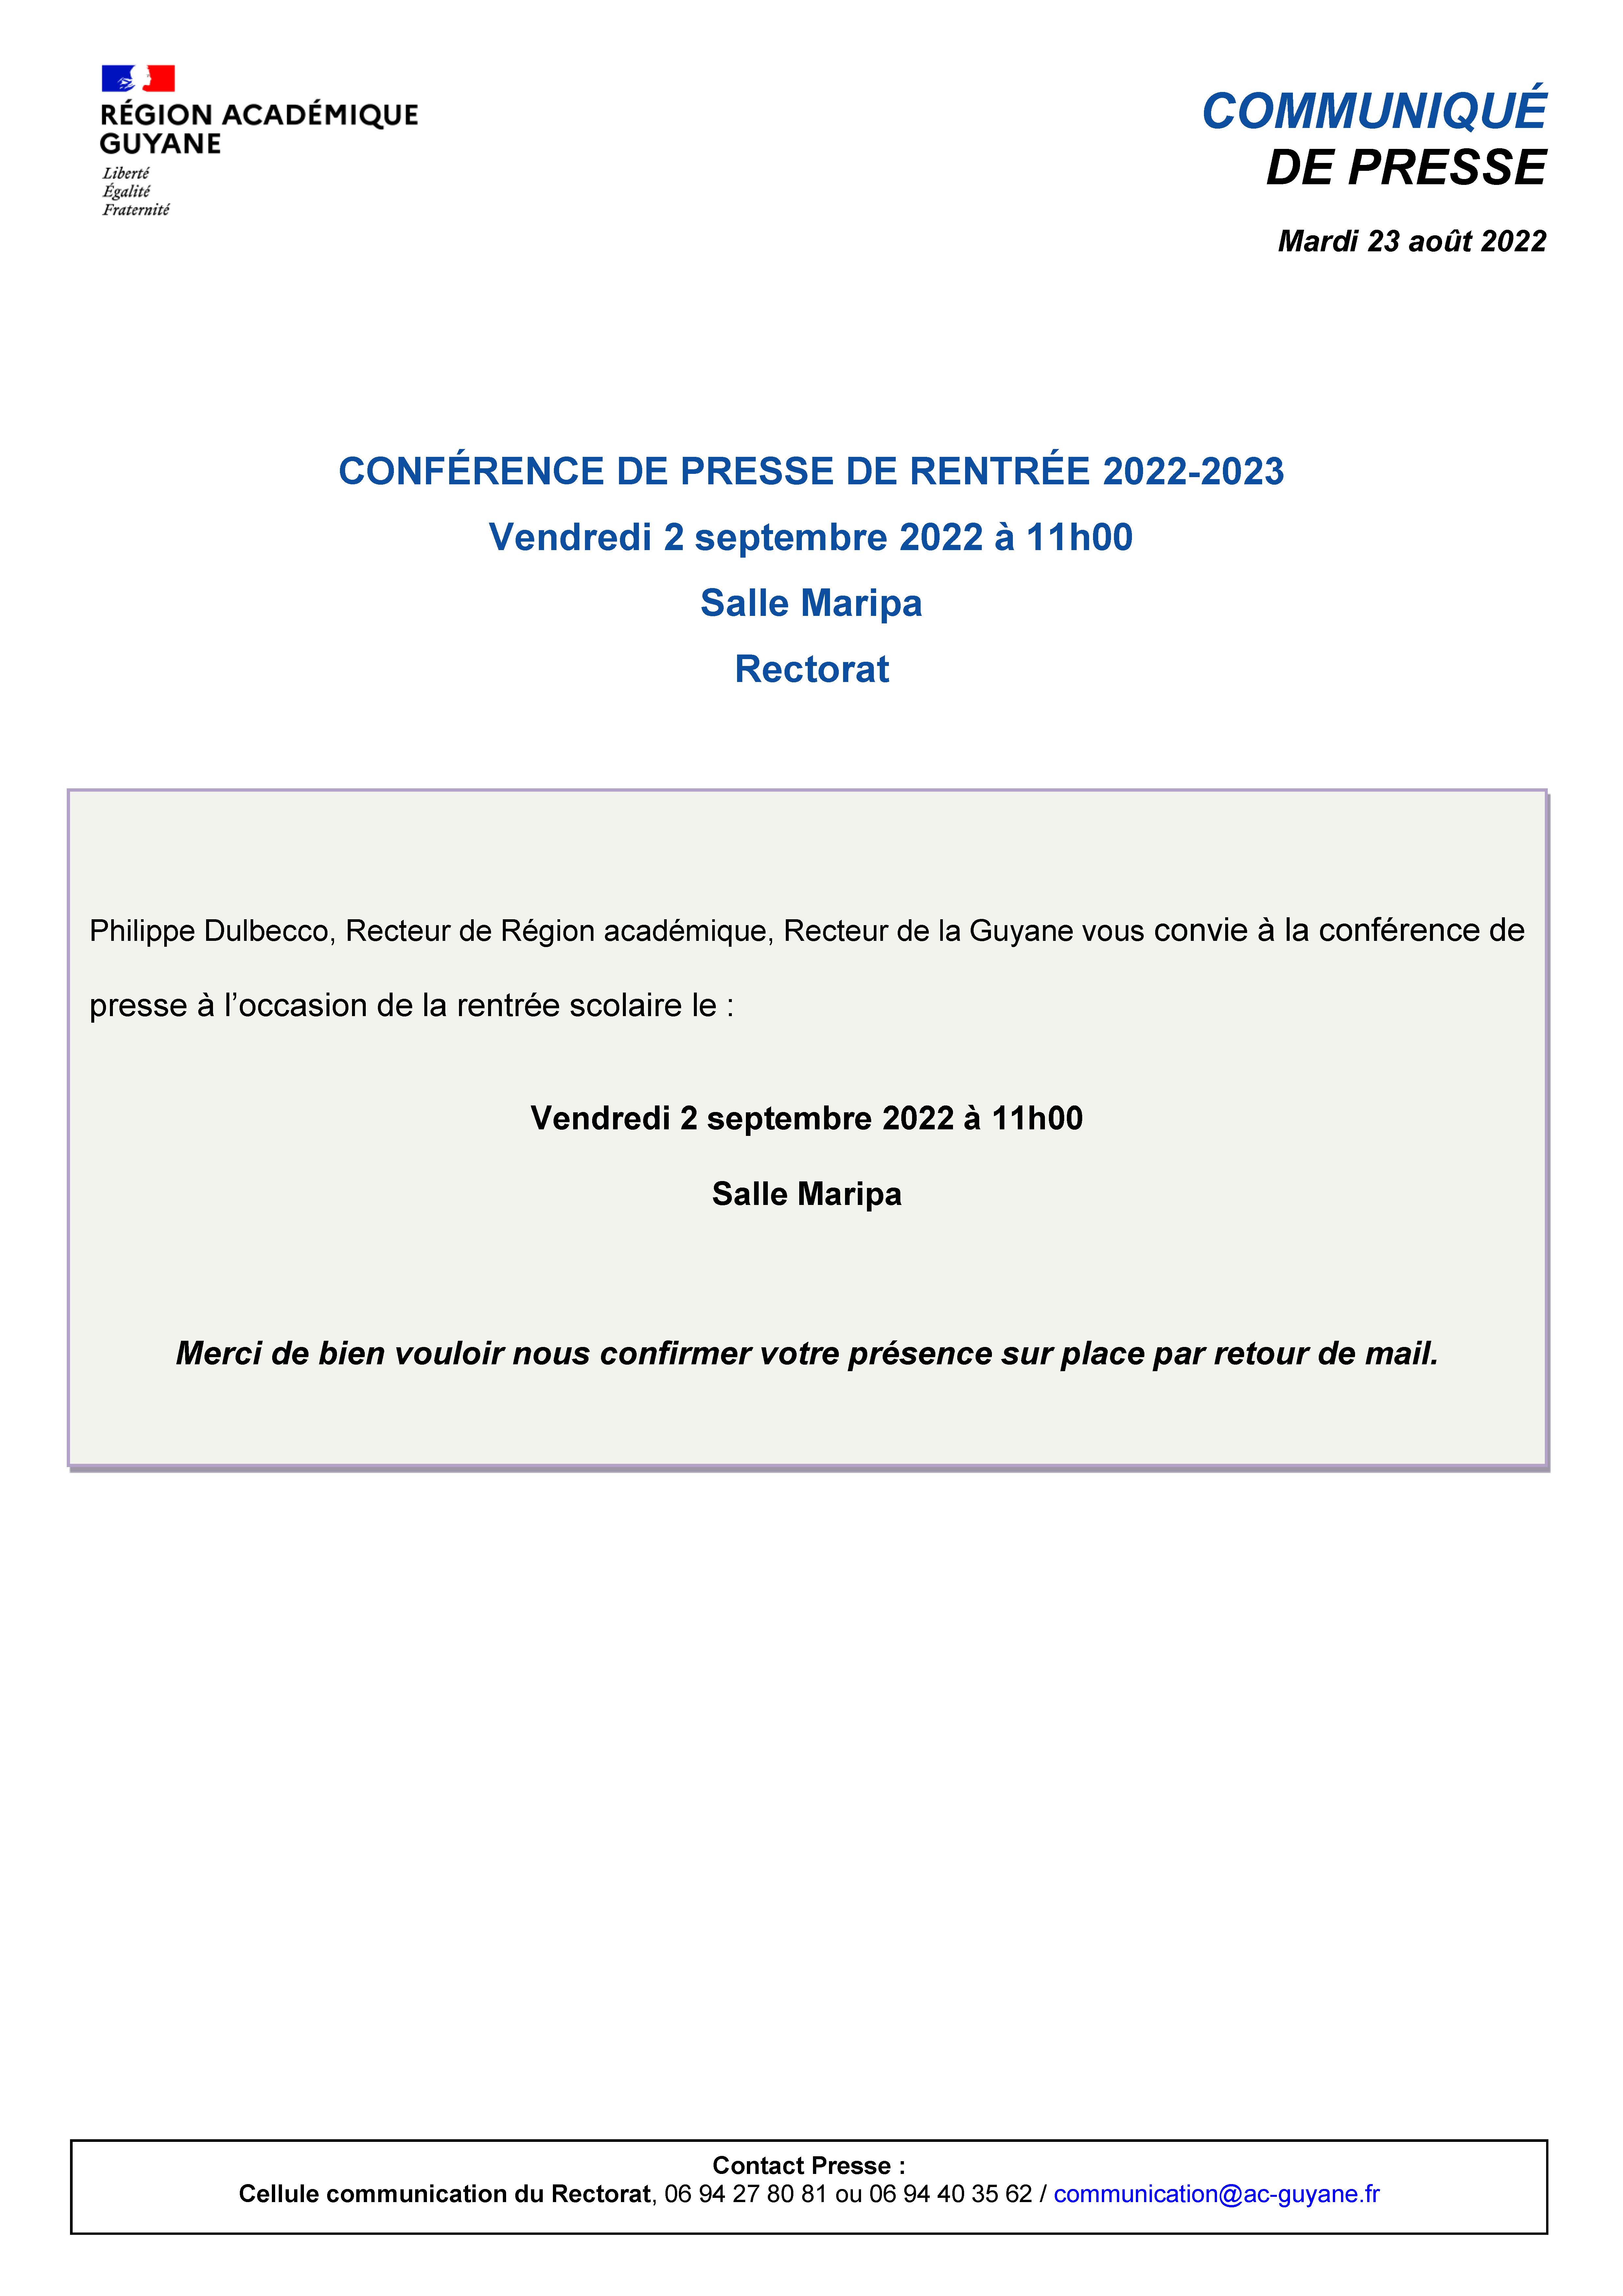 CP - Conférence de presse de rentrée vendredi 2 septembre 2022 au Rectorat